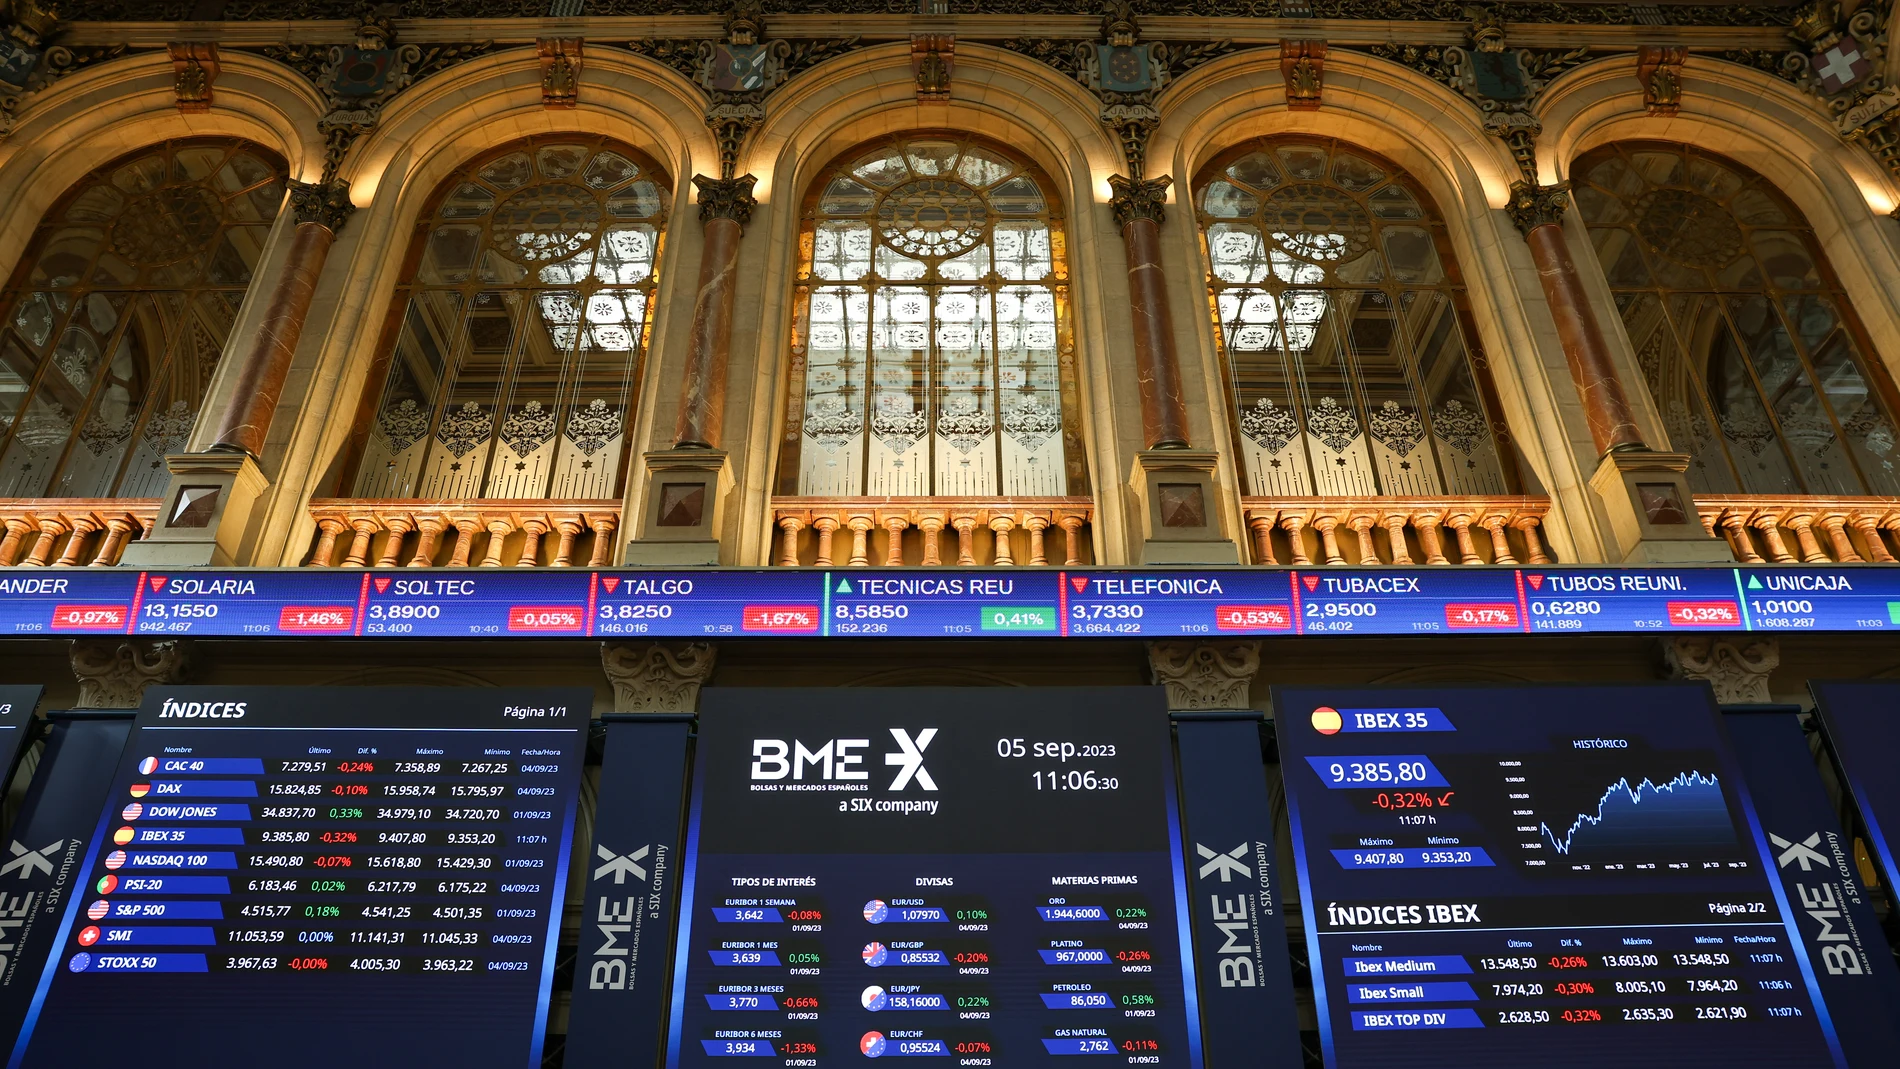 Economía/Bolsa.- El Ibex cae un 1,1% a media sesión pendiente de Inditex y con la vista puesta en la reunión del BCE